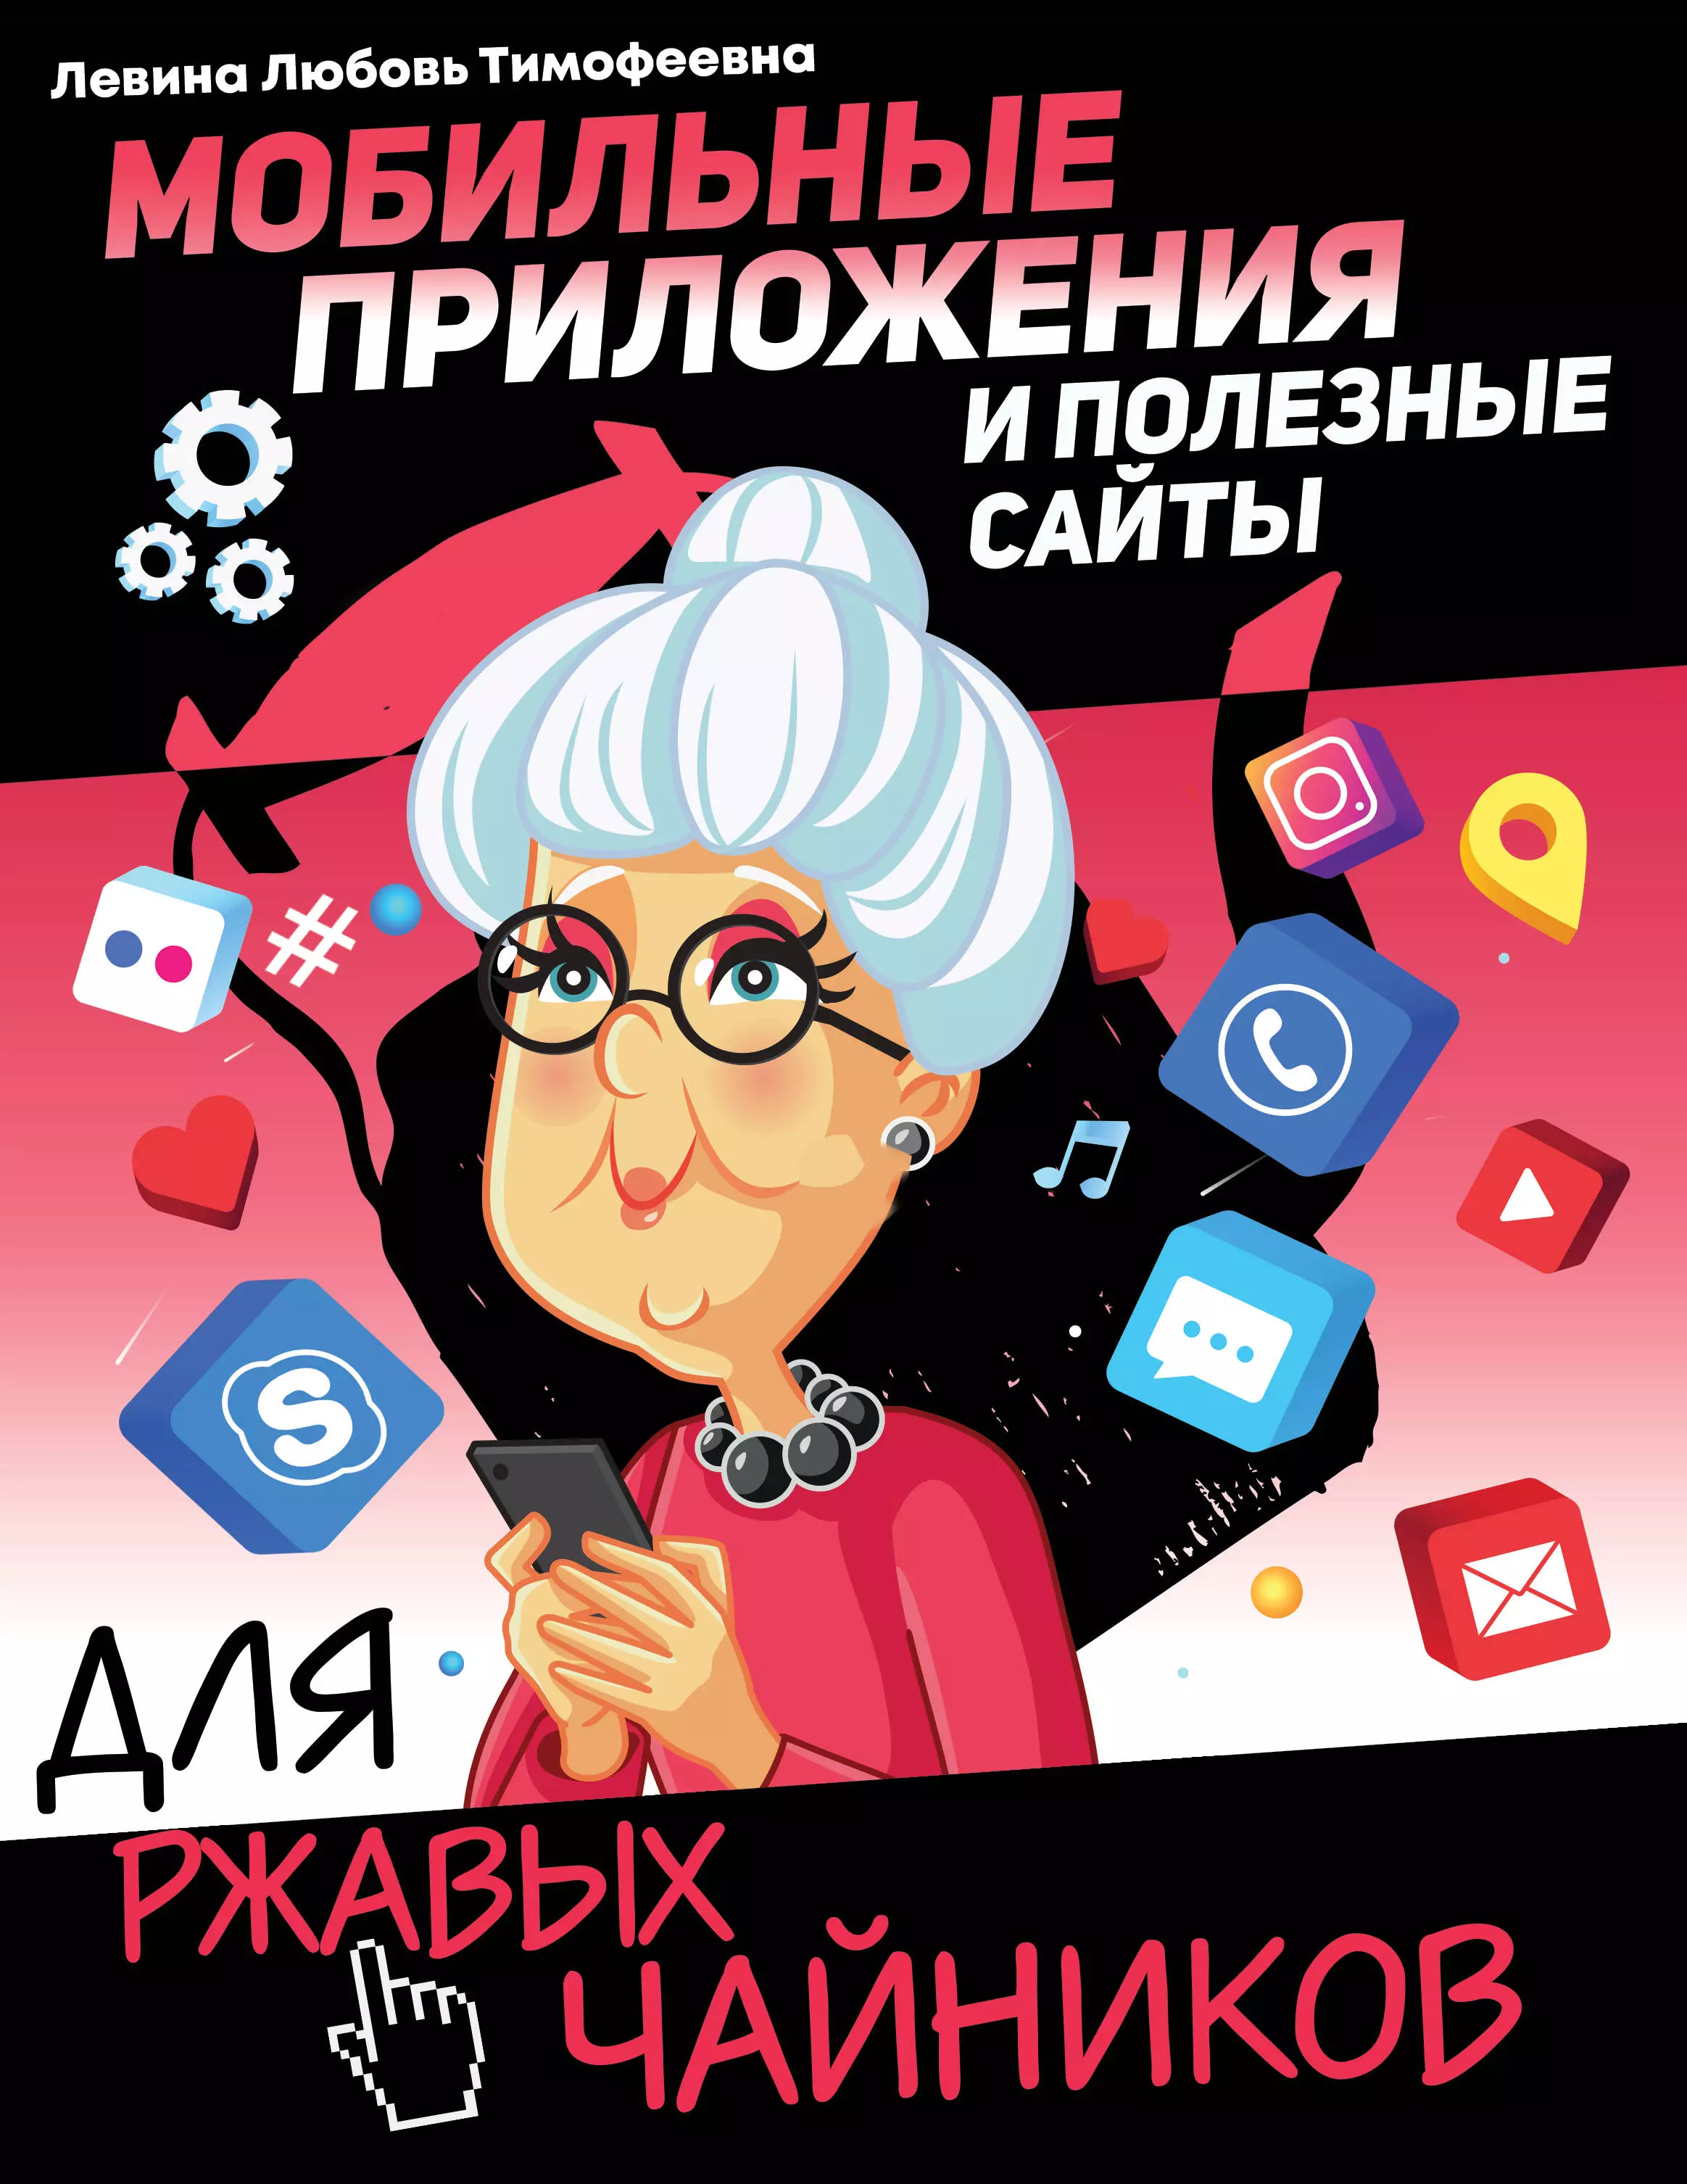 Левина Любовь Тимофеевна - Мобильные приложения и полезные сайты для ржавых чайников